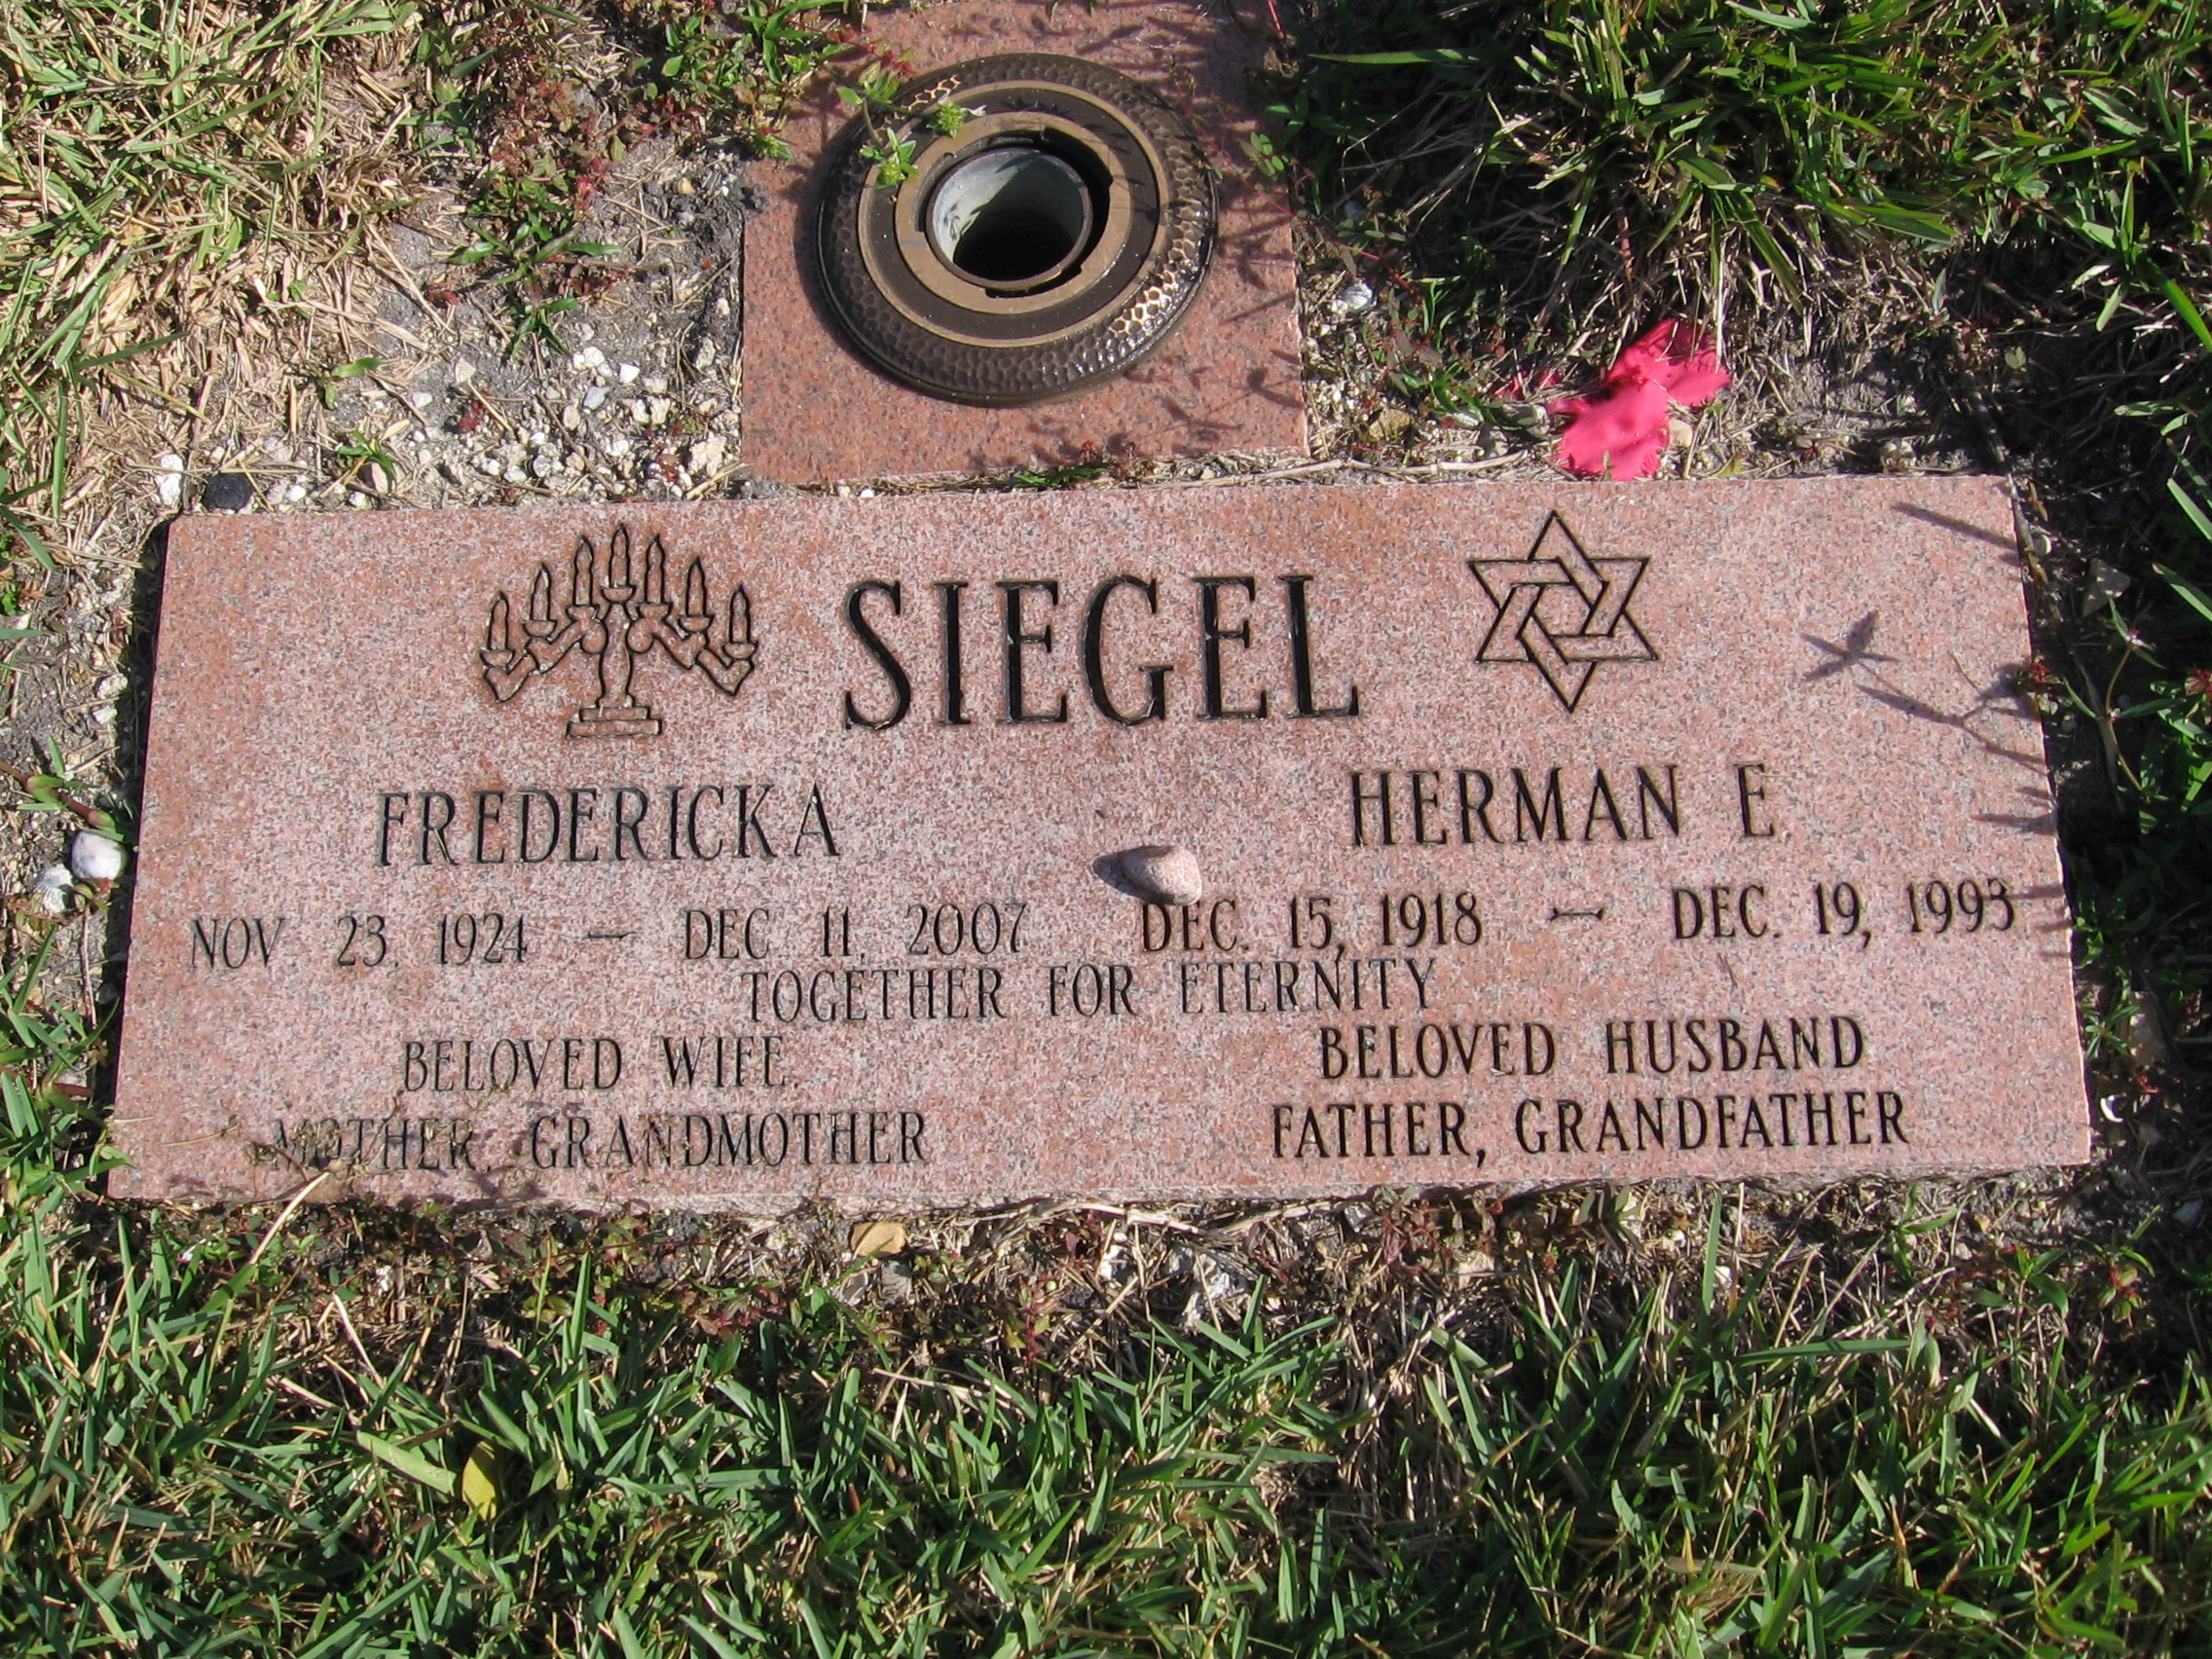 Fredericka Siegel